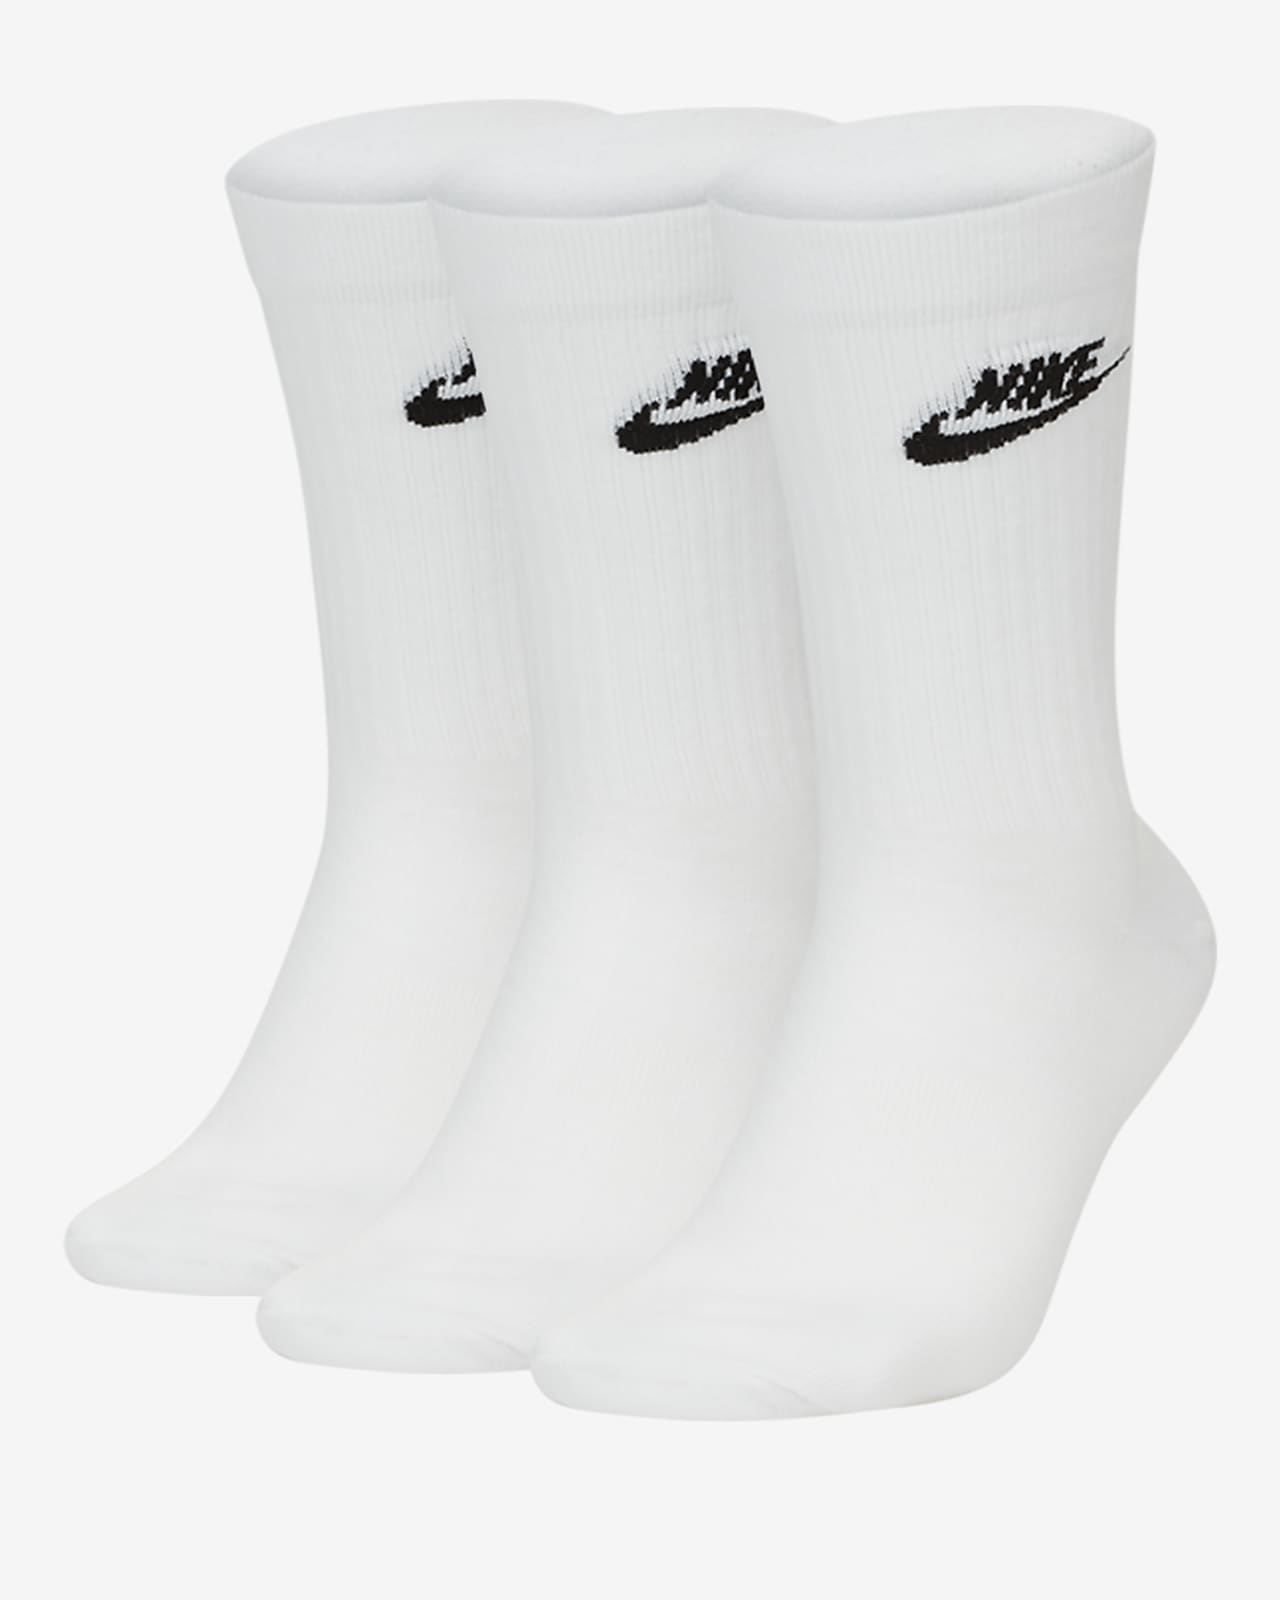 nike extended size socks